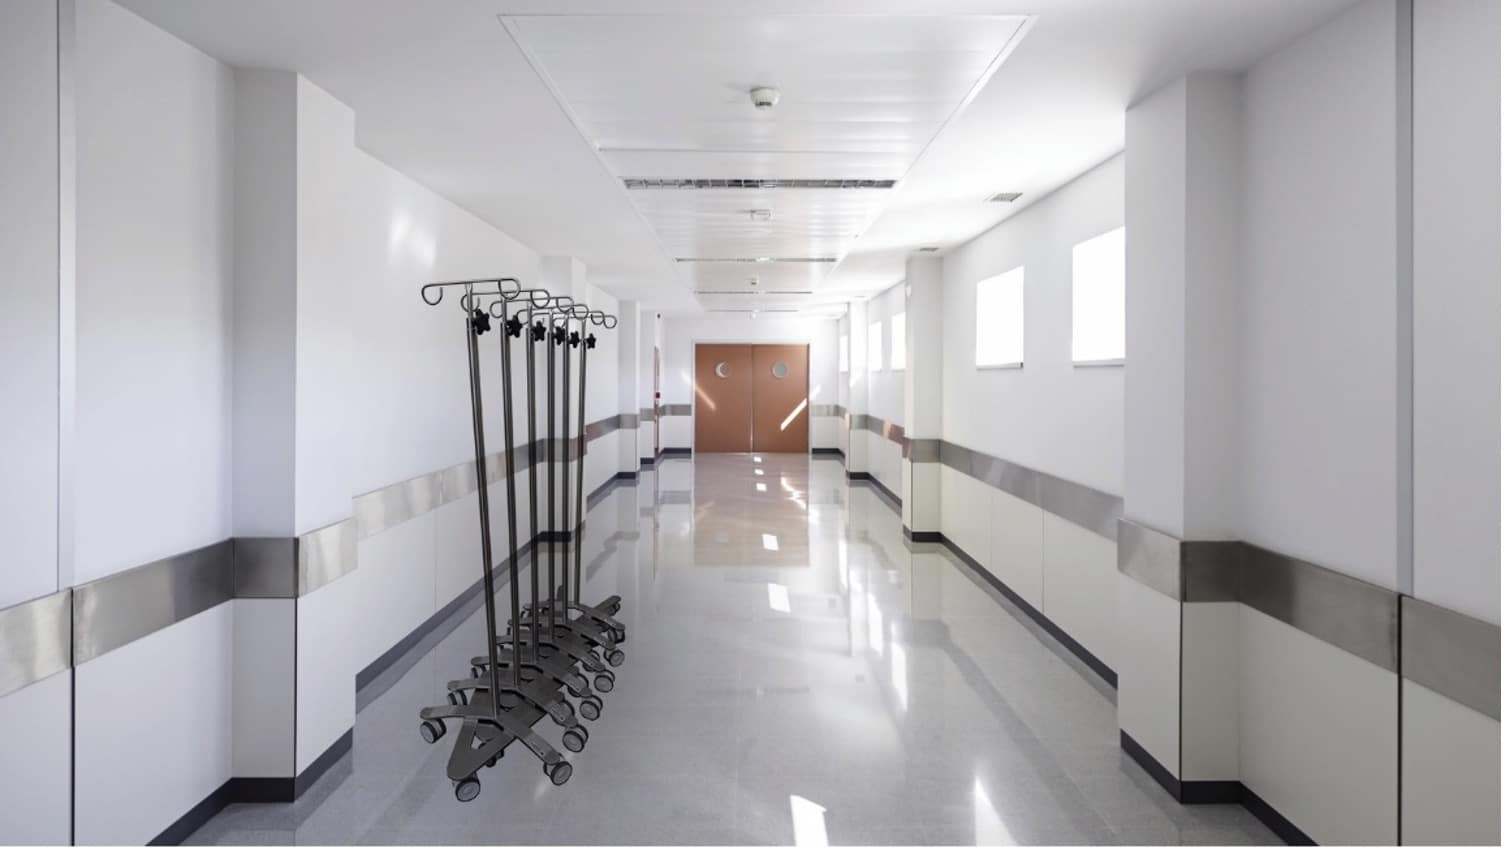 IV Pole Hospital